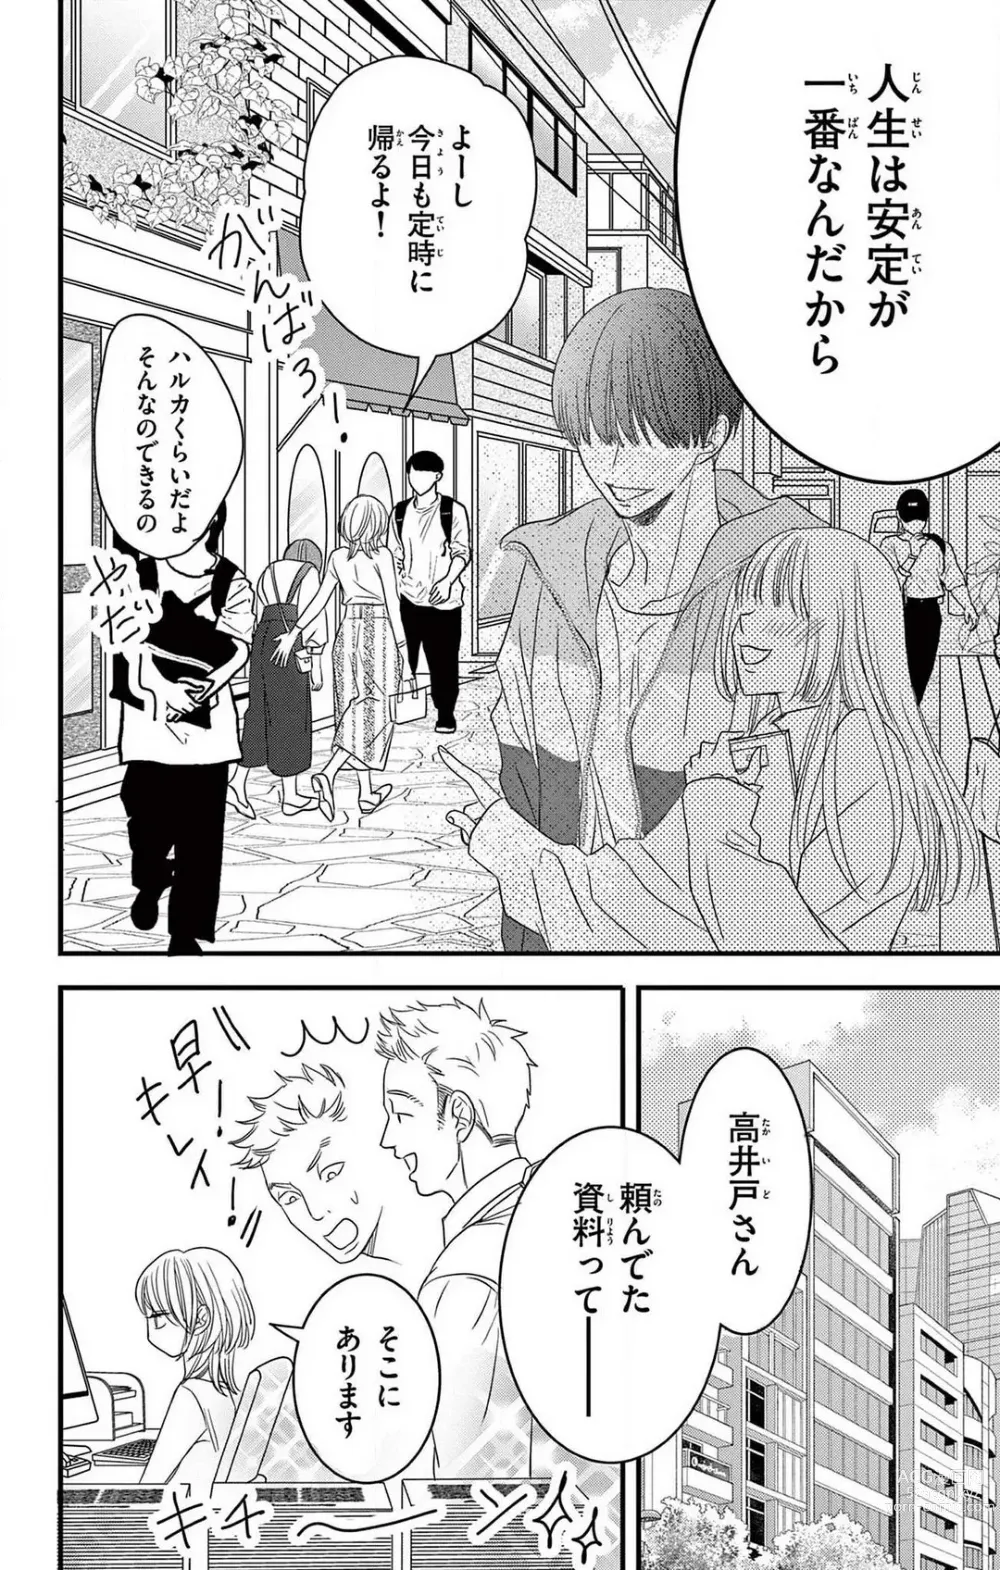 Page 4 of manga Kuzu wa Kuzu Demo Kao ga ii Kuzu 1-7